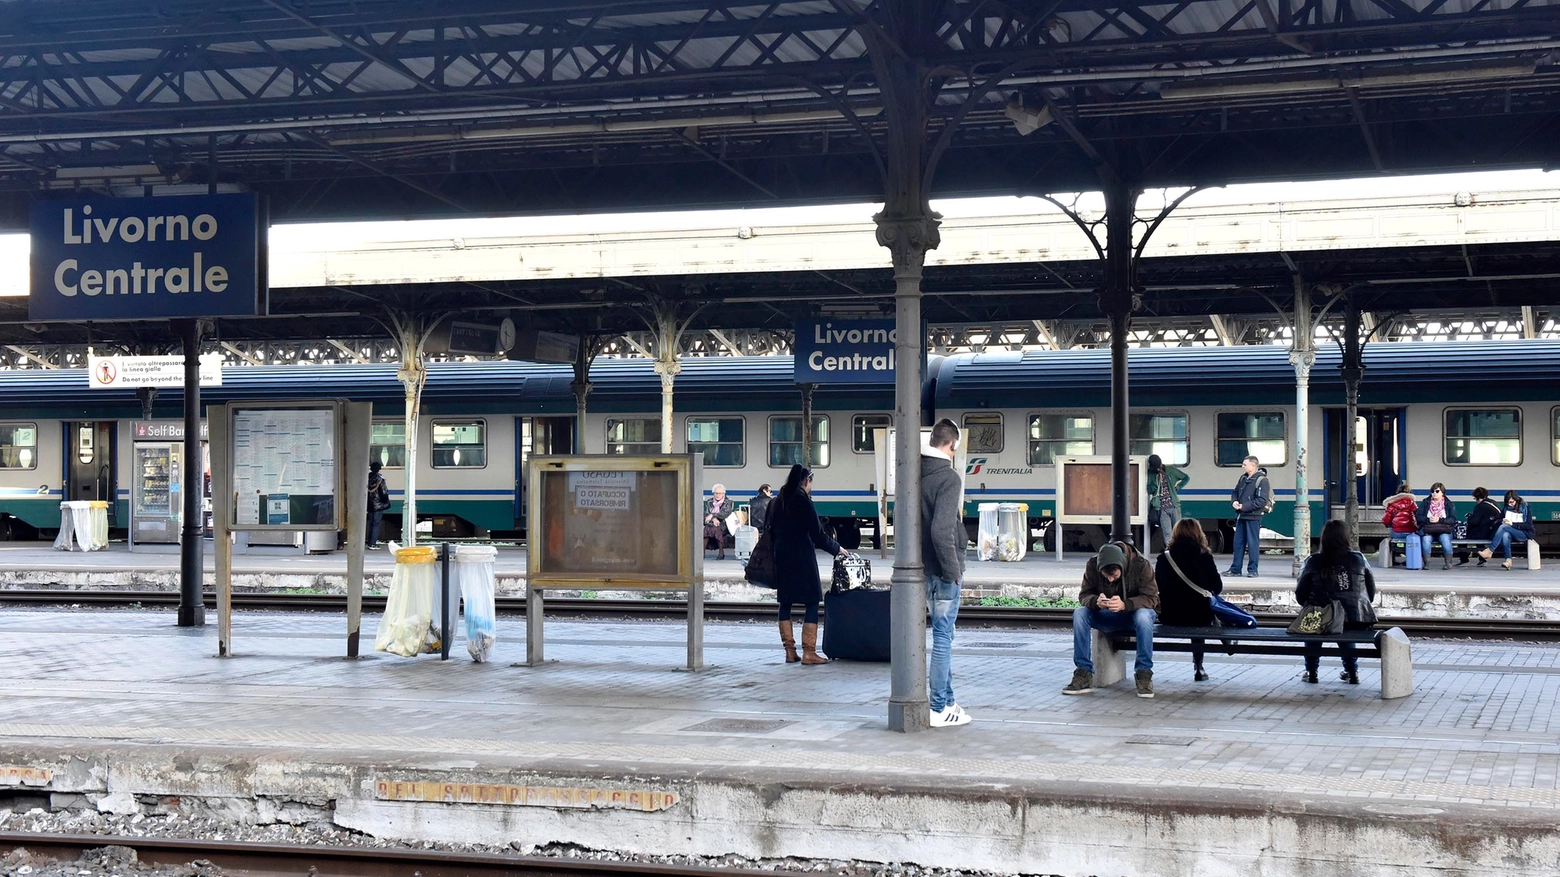 La stazione di Livorno